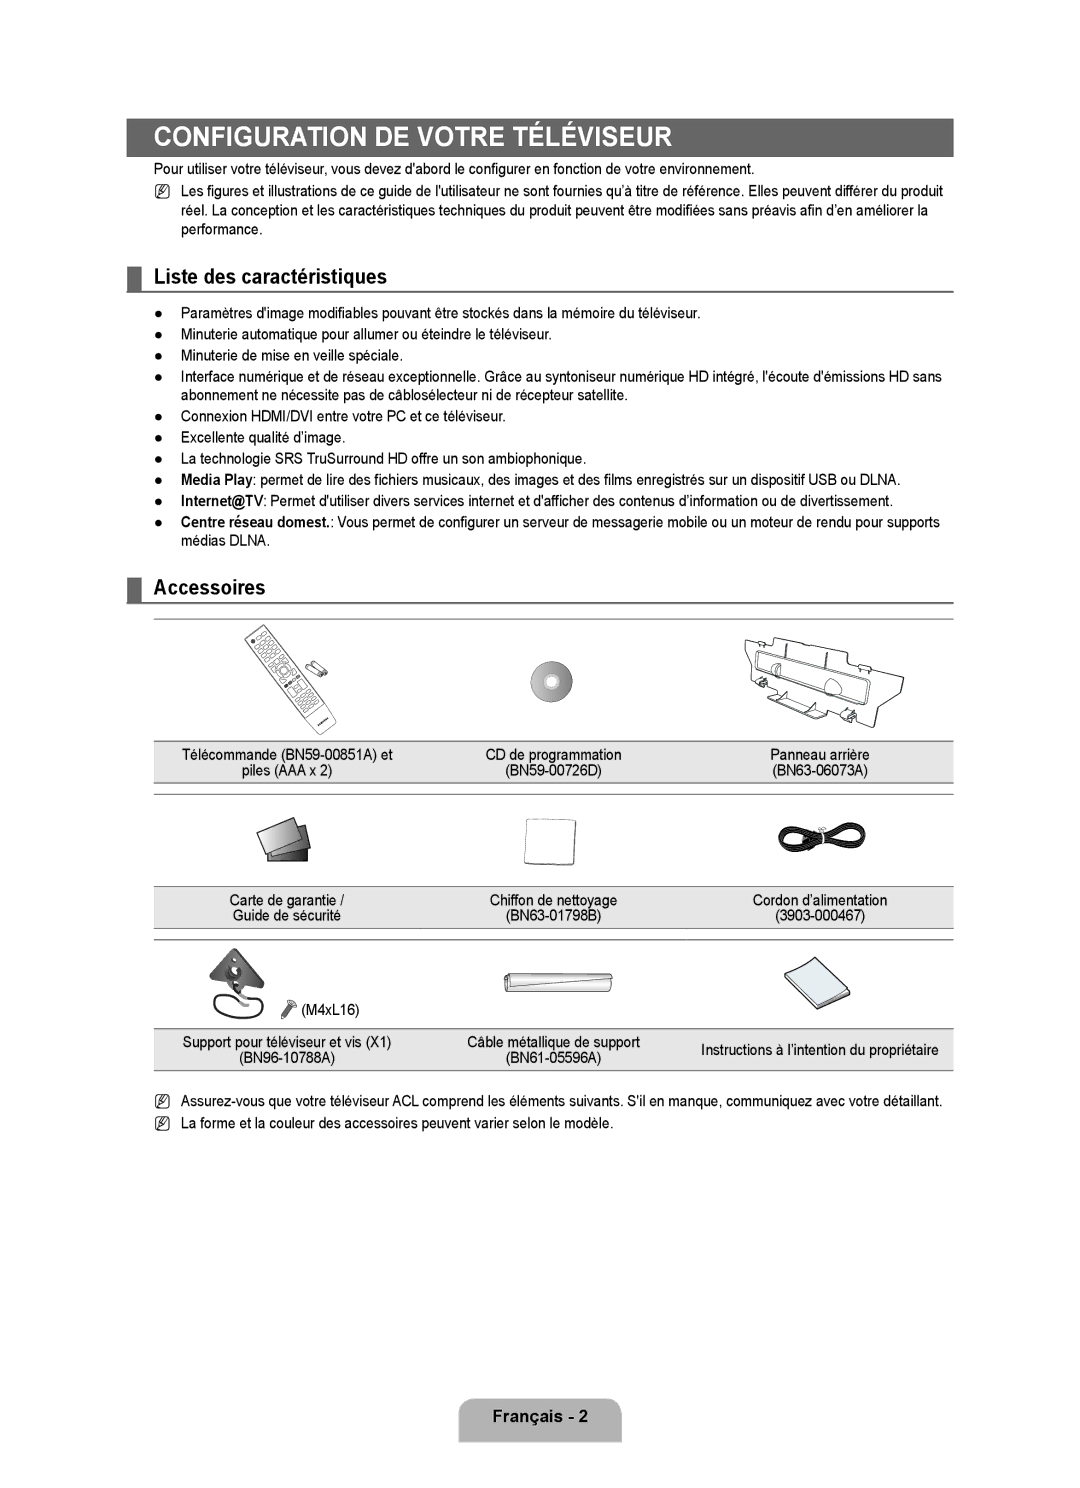 Samsung LN6B60 user manual Configuration de votre téléviseur, Liste des caractéristiques, Accessoires, Panneau arrière 